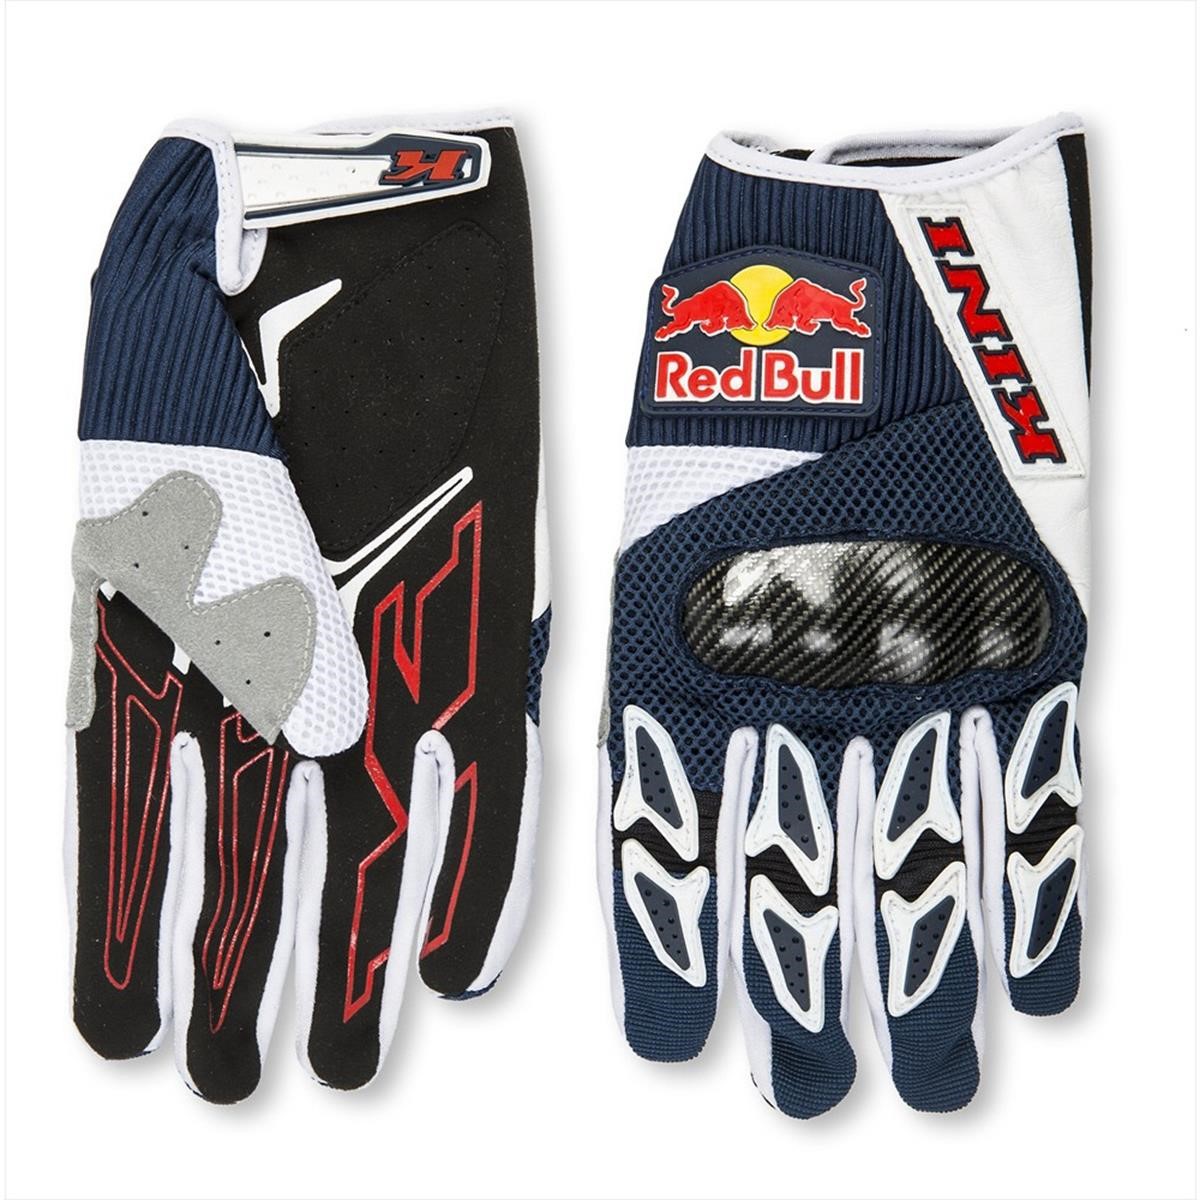 Kini Red Bull Handschuhe Competition Rallye Blau/Weiß